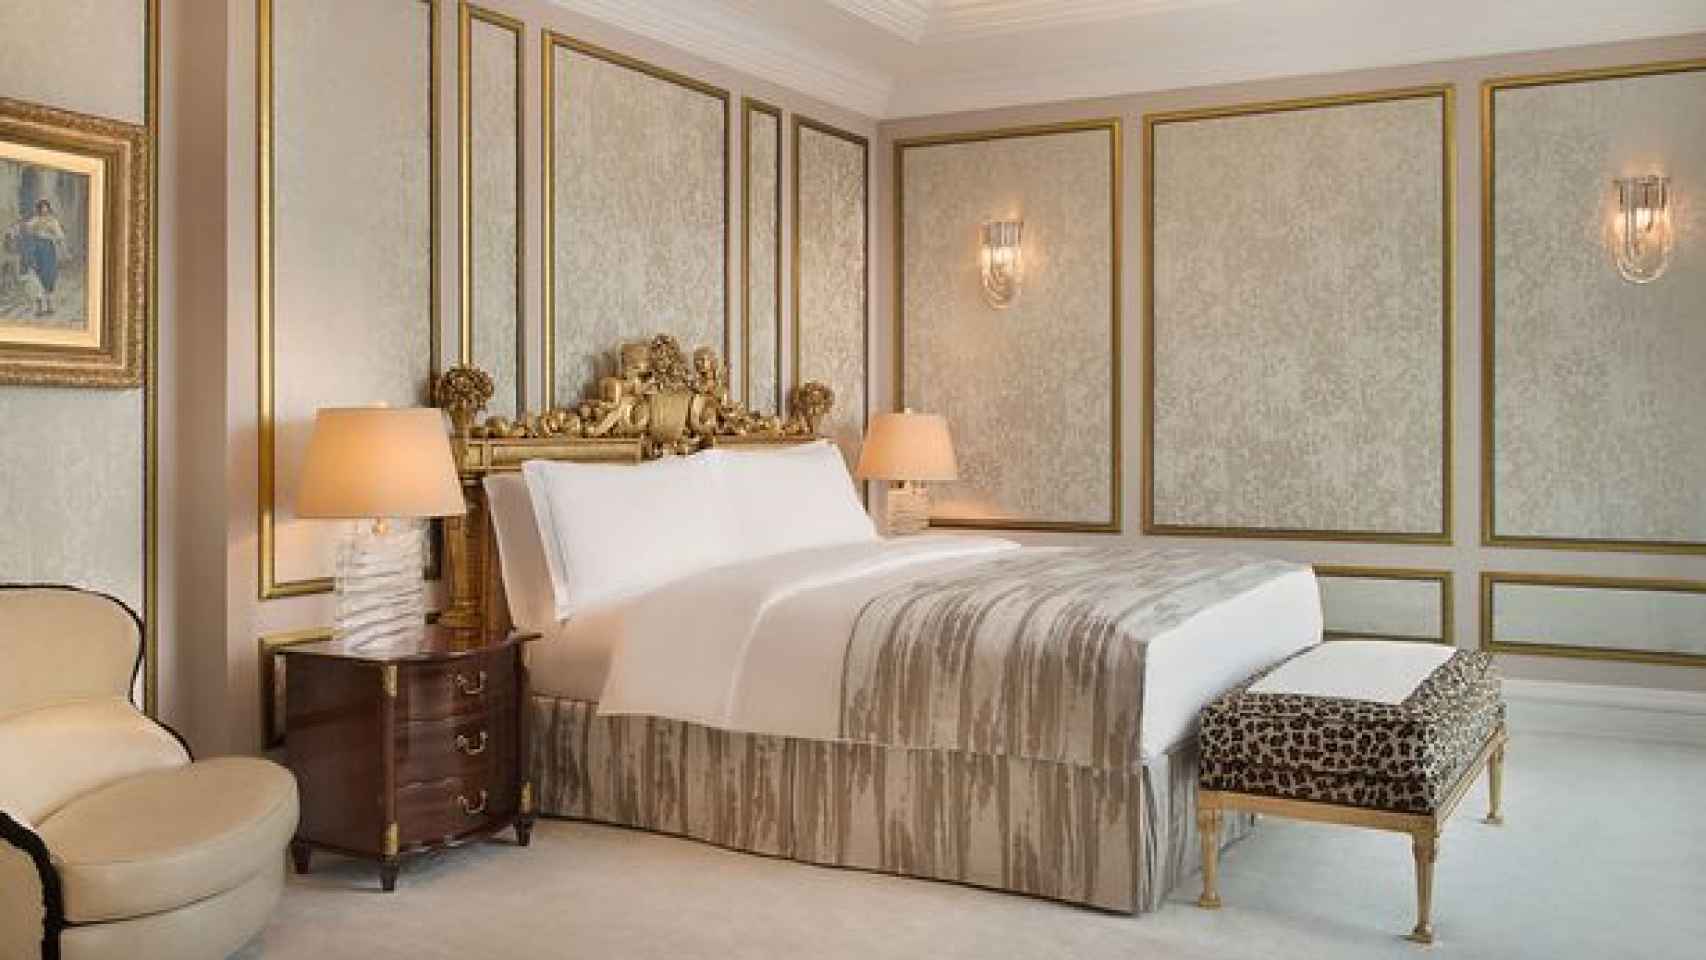 Una de las habitaciones del hotel Ritz Carlton de Moscú.